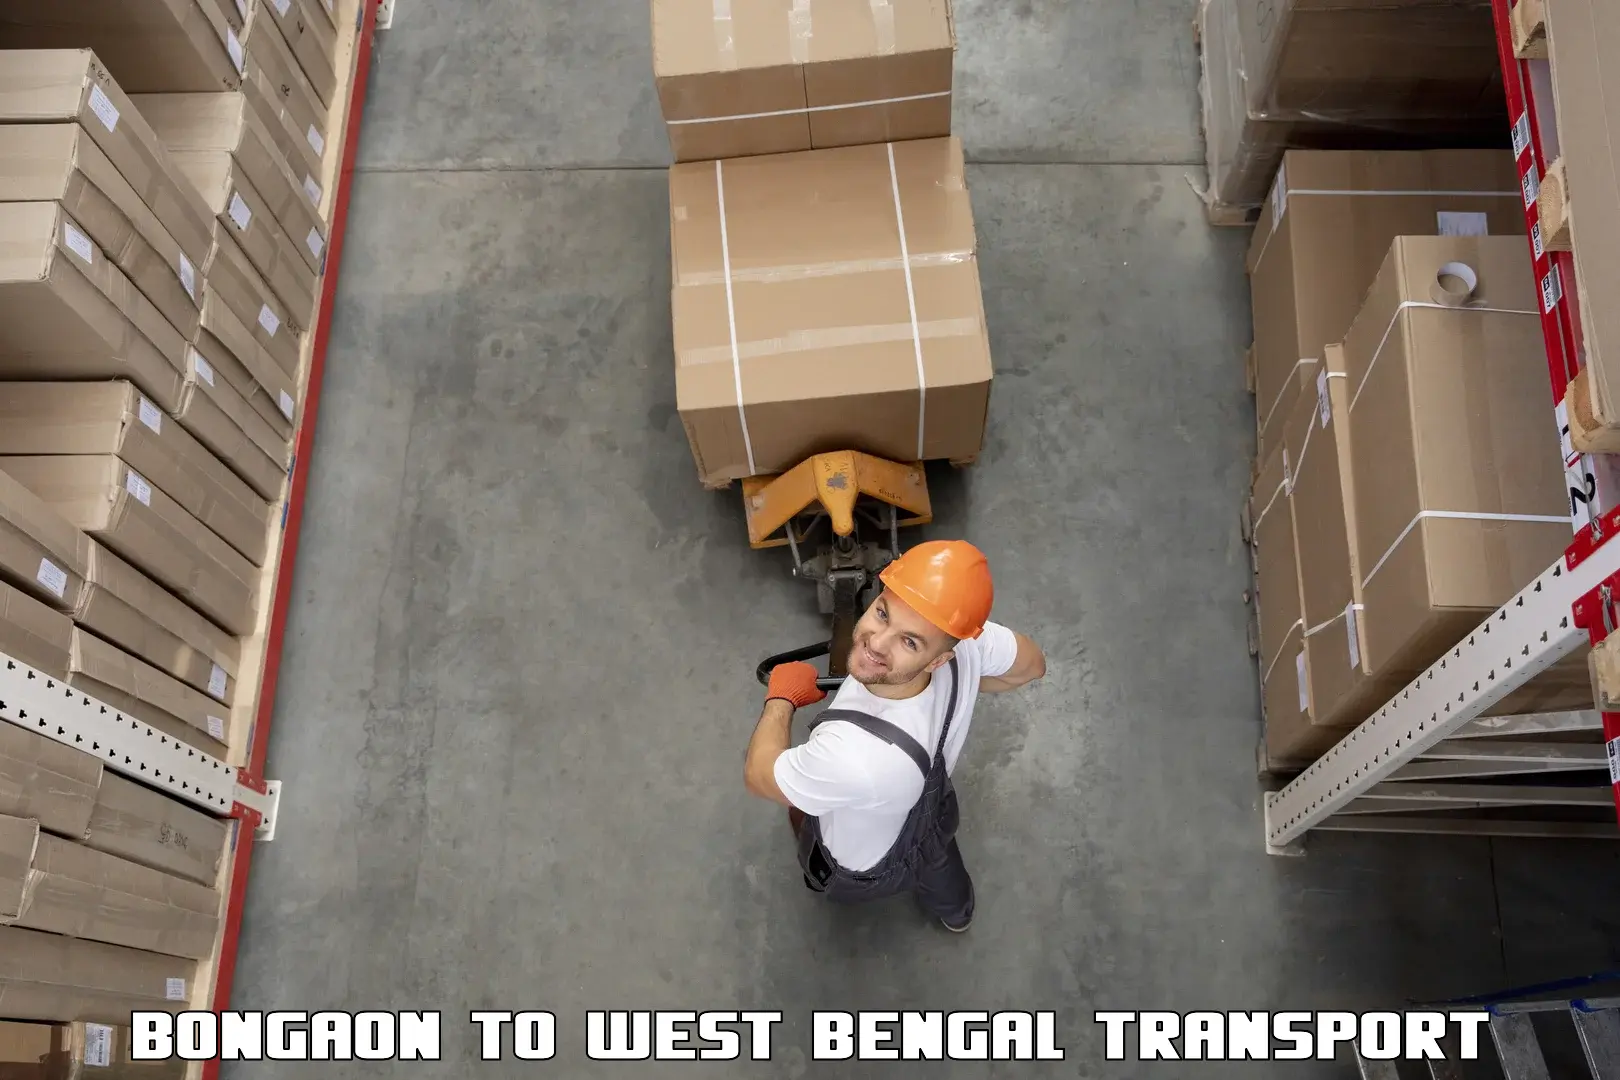 Domestic transport services Bongaon to Jalpaiguri